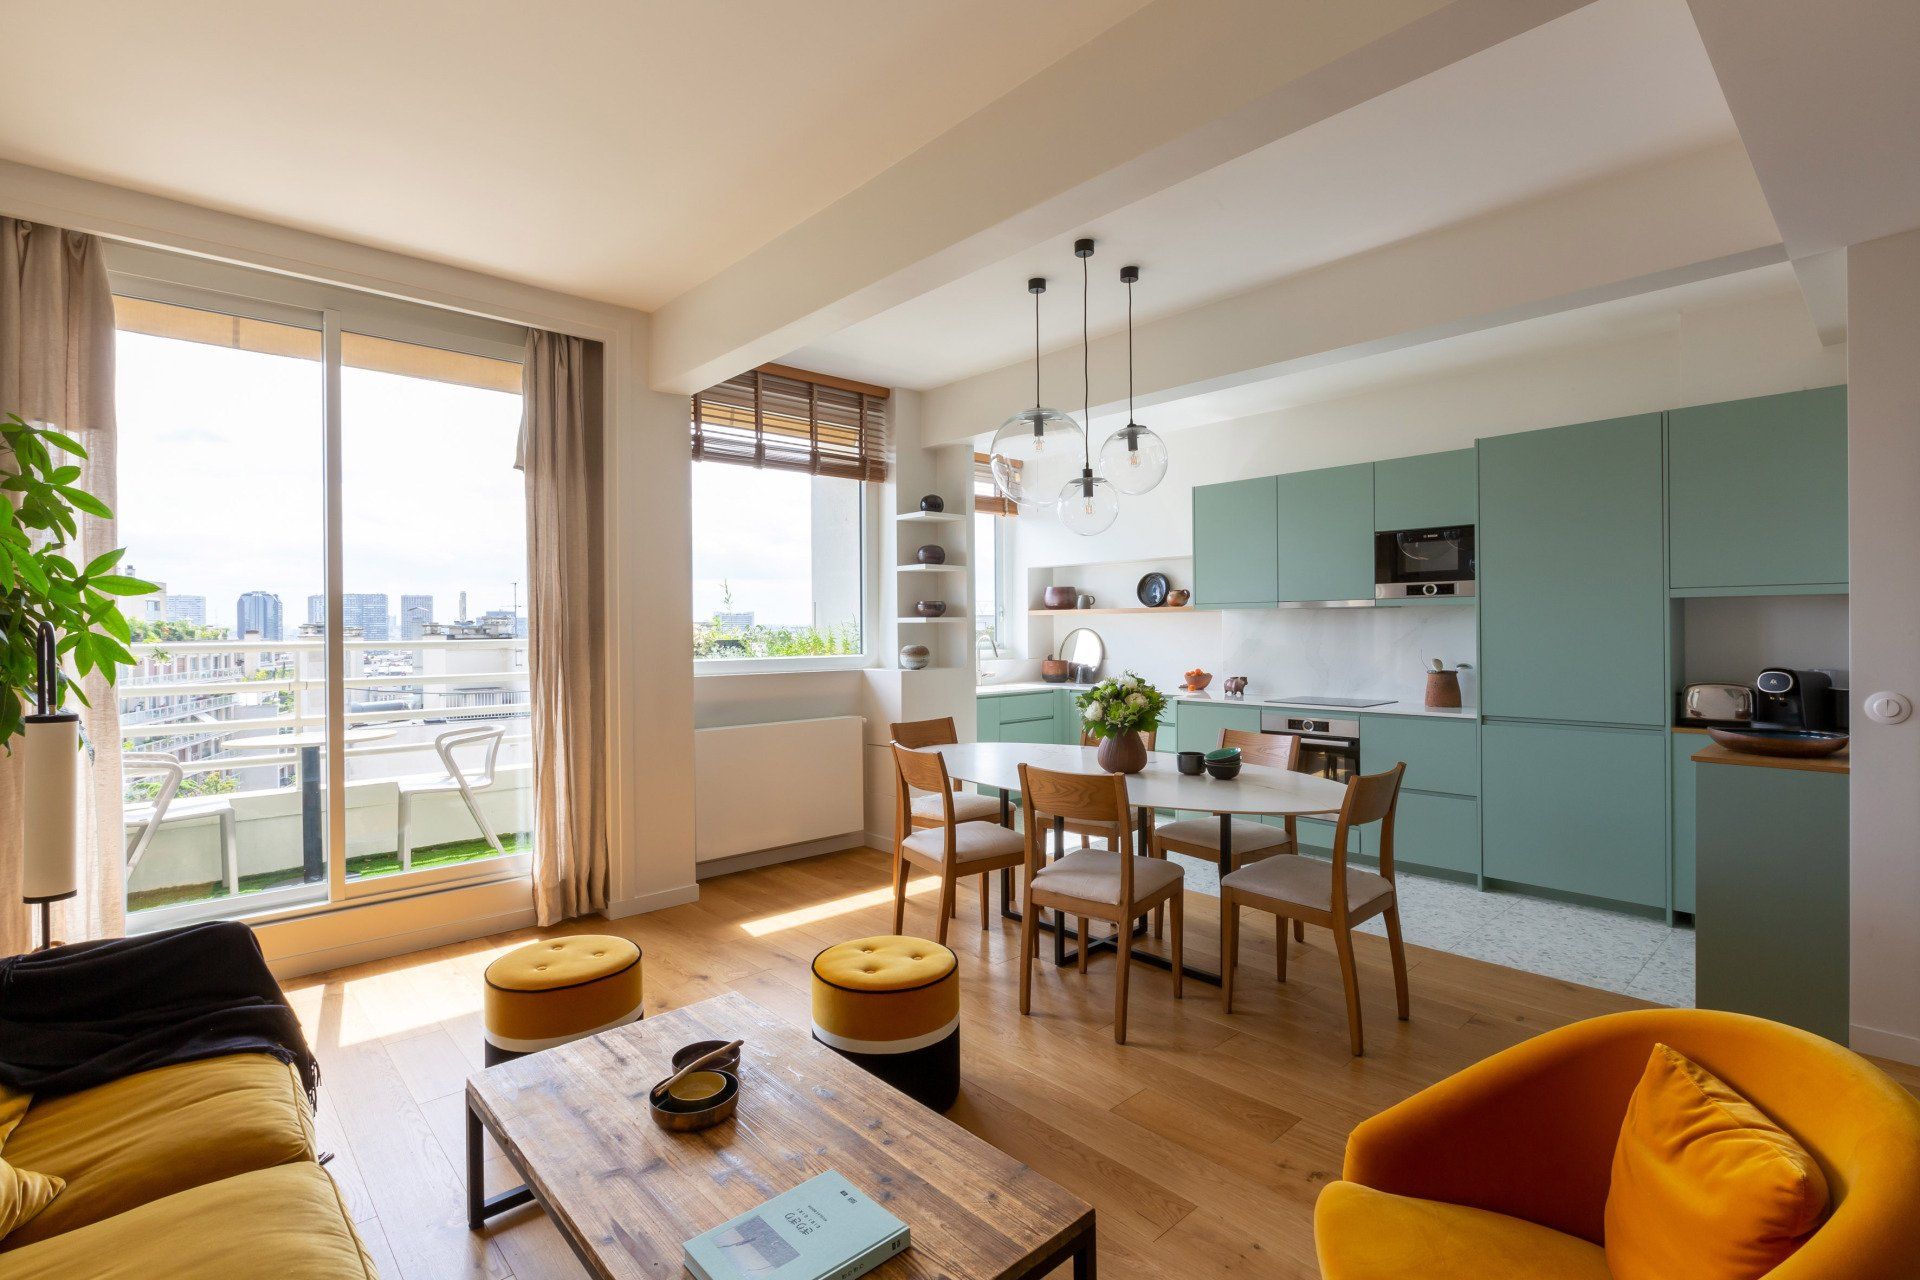 AXIOME Interior Design, architecte d'intérieur paris, salon, canapé jaune moutarde, cuisine verte, green kitchen, Terrazzo